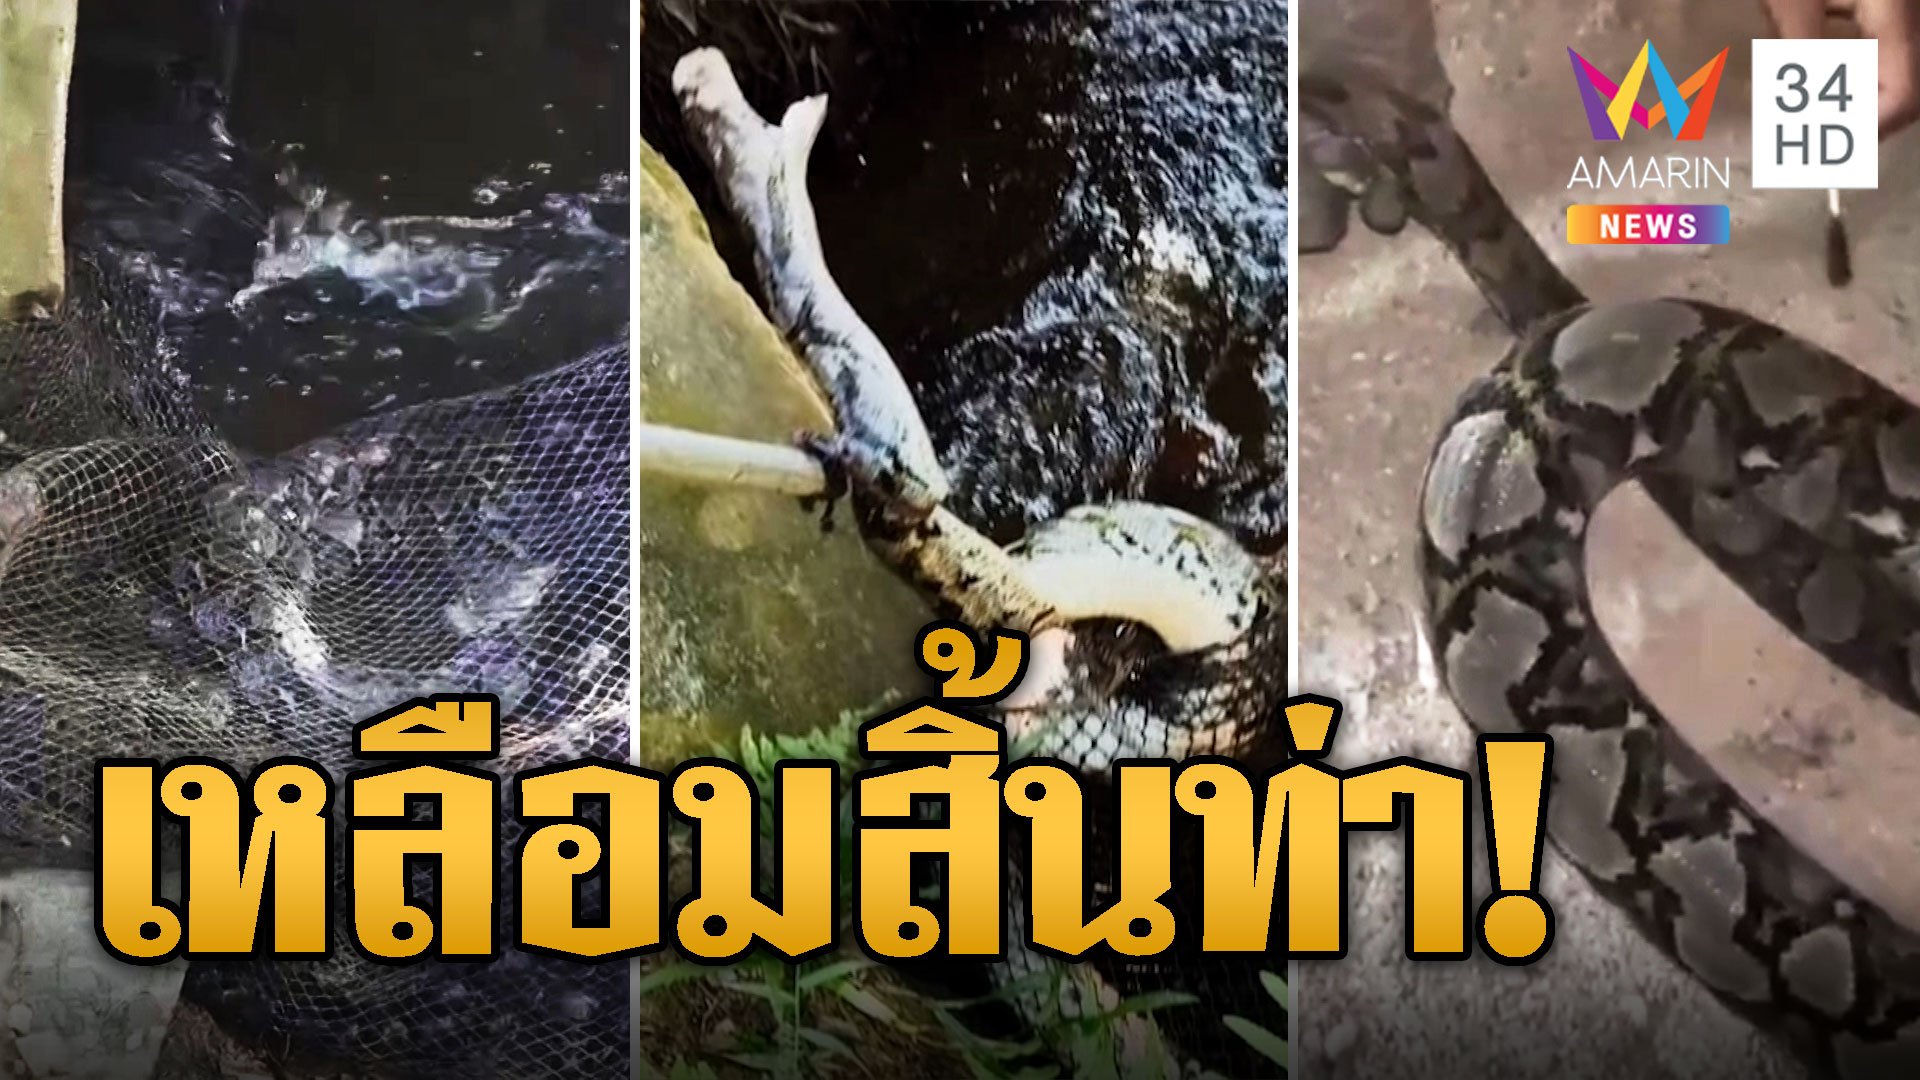 งูเหลือมเกือบตาย ติดอวนดักหอยโดนบาด ทายาแดงก่อยปล่อยกลับบ้าน | ข่าวอรุณอมรินทร์ | 3 ก.พ. 67 | AMARIN TVHD34